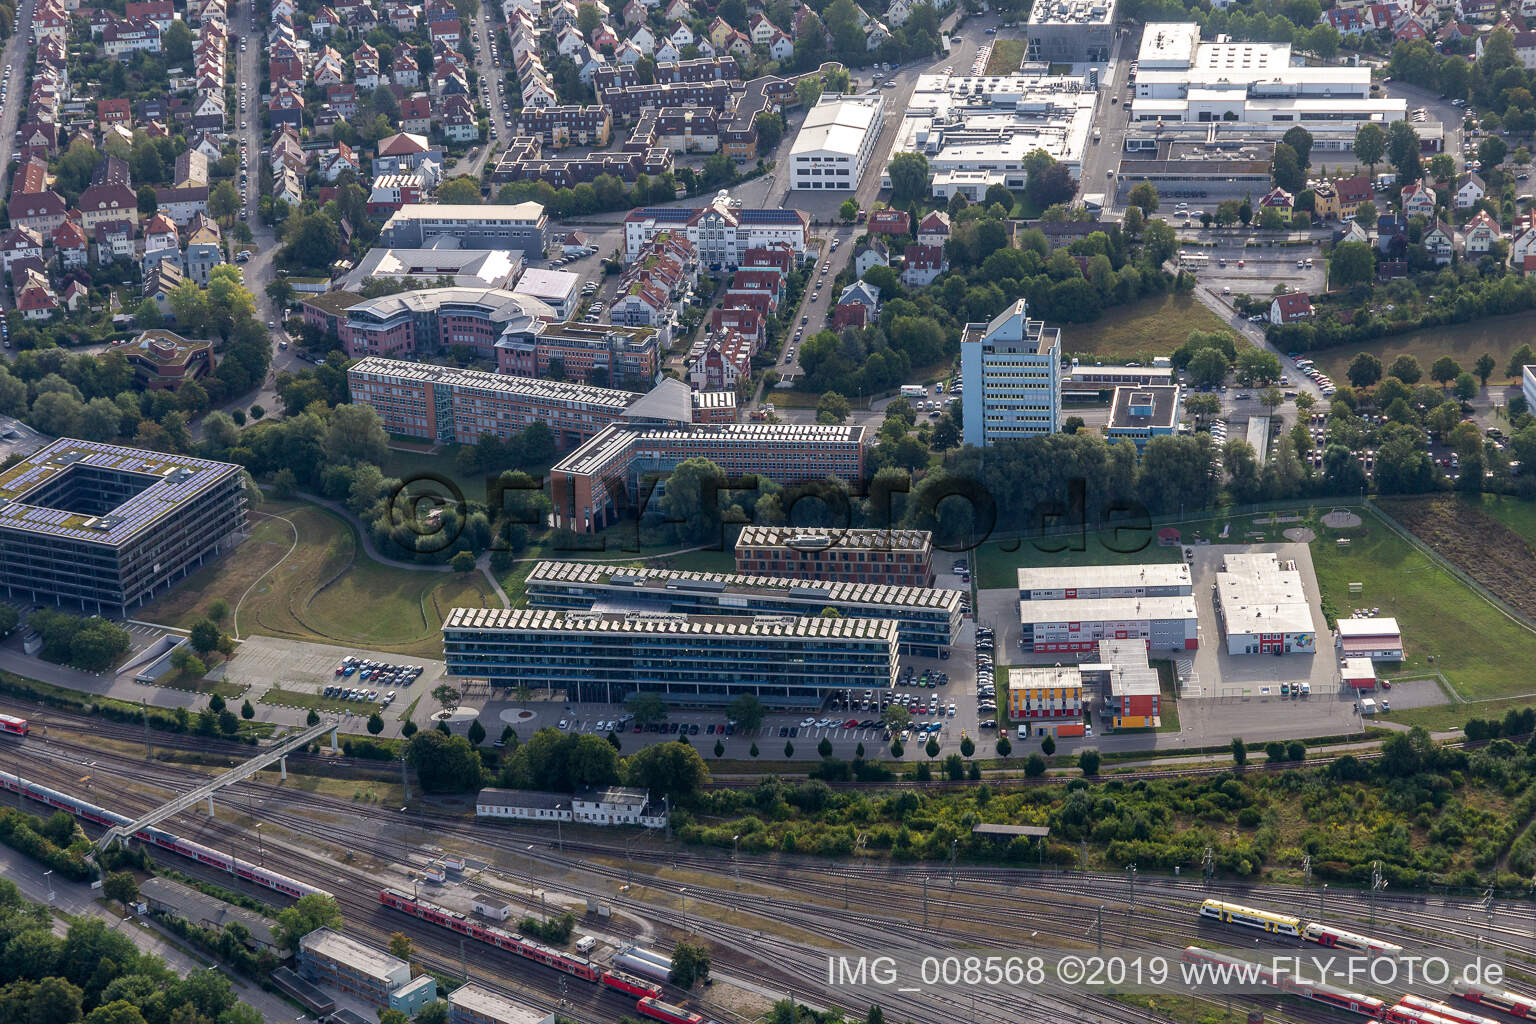 Vue aérienne de Bureau de district, conseil régional à Tübingen dans le département Bade-Wurtemberg, Allemagne